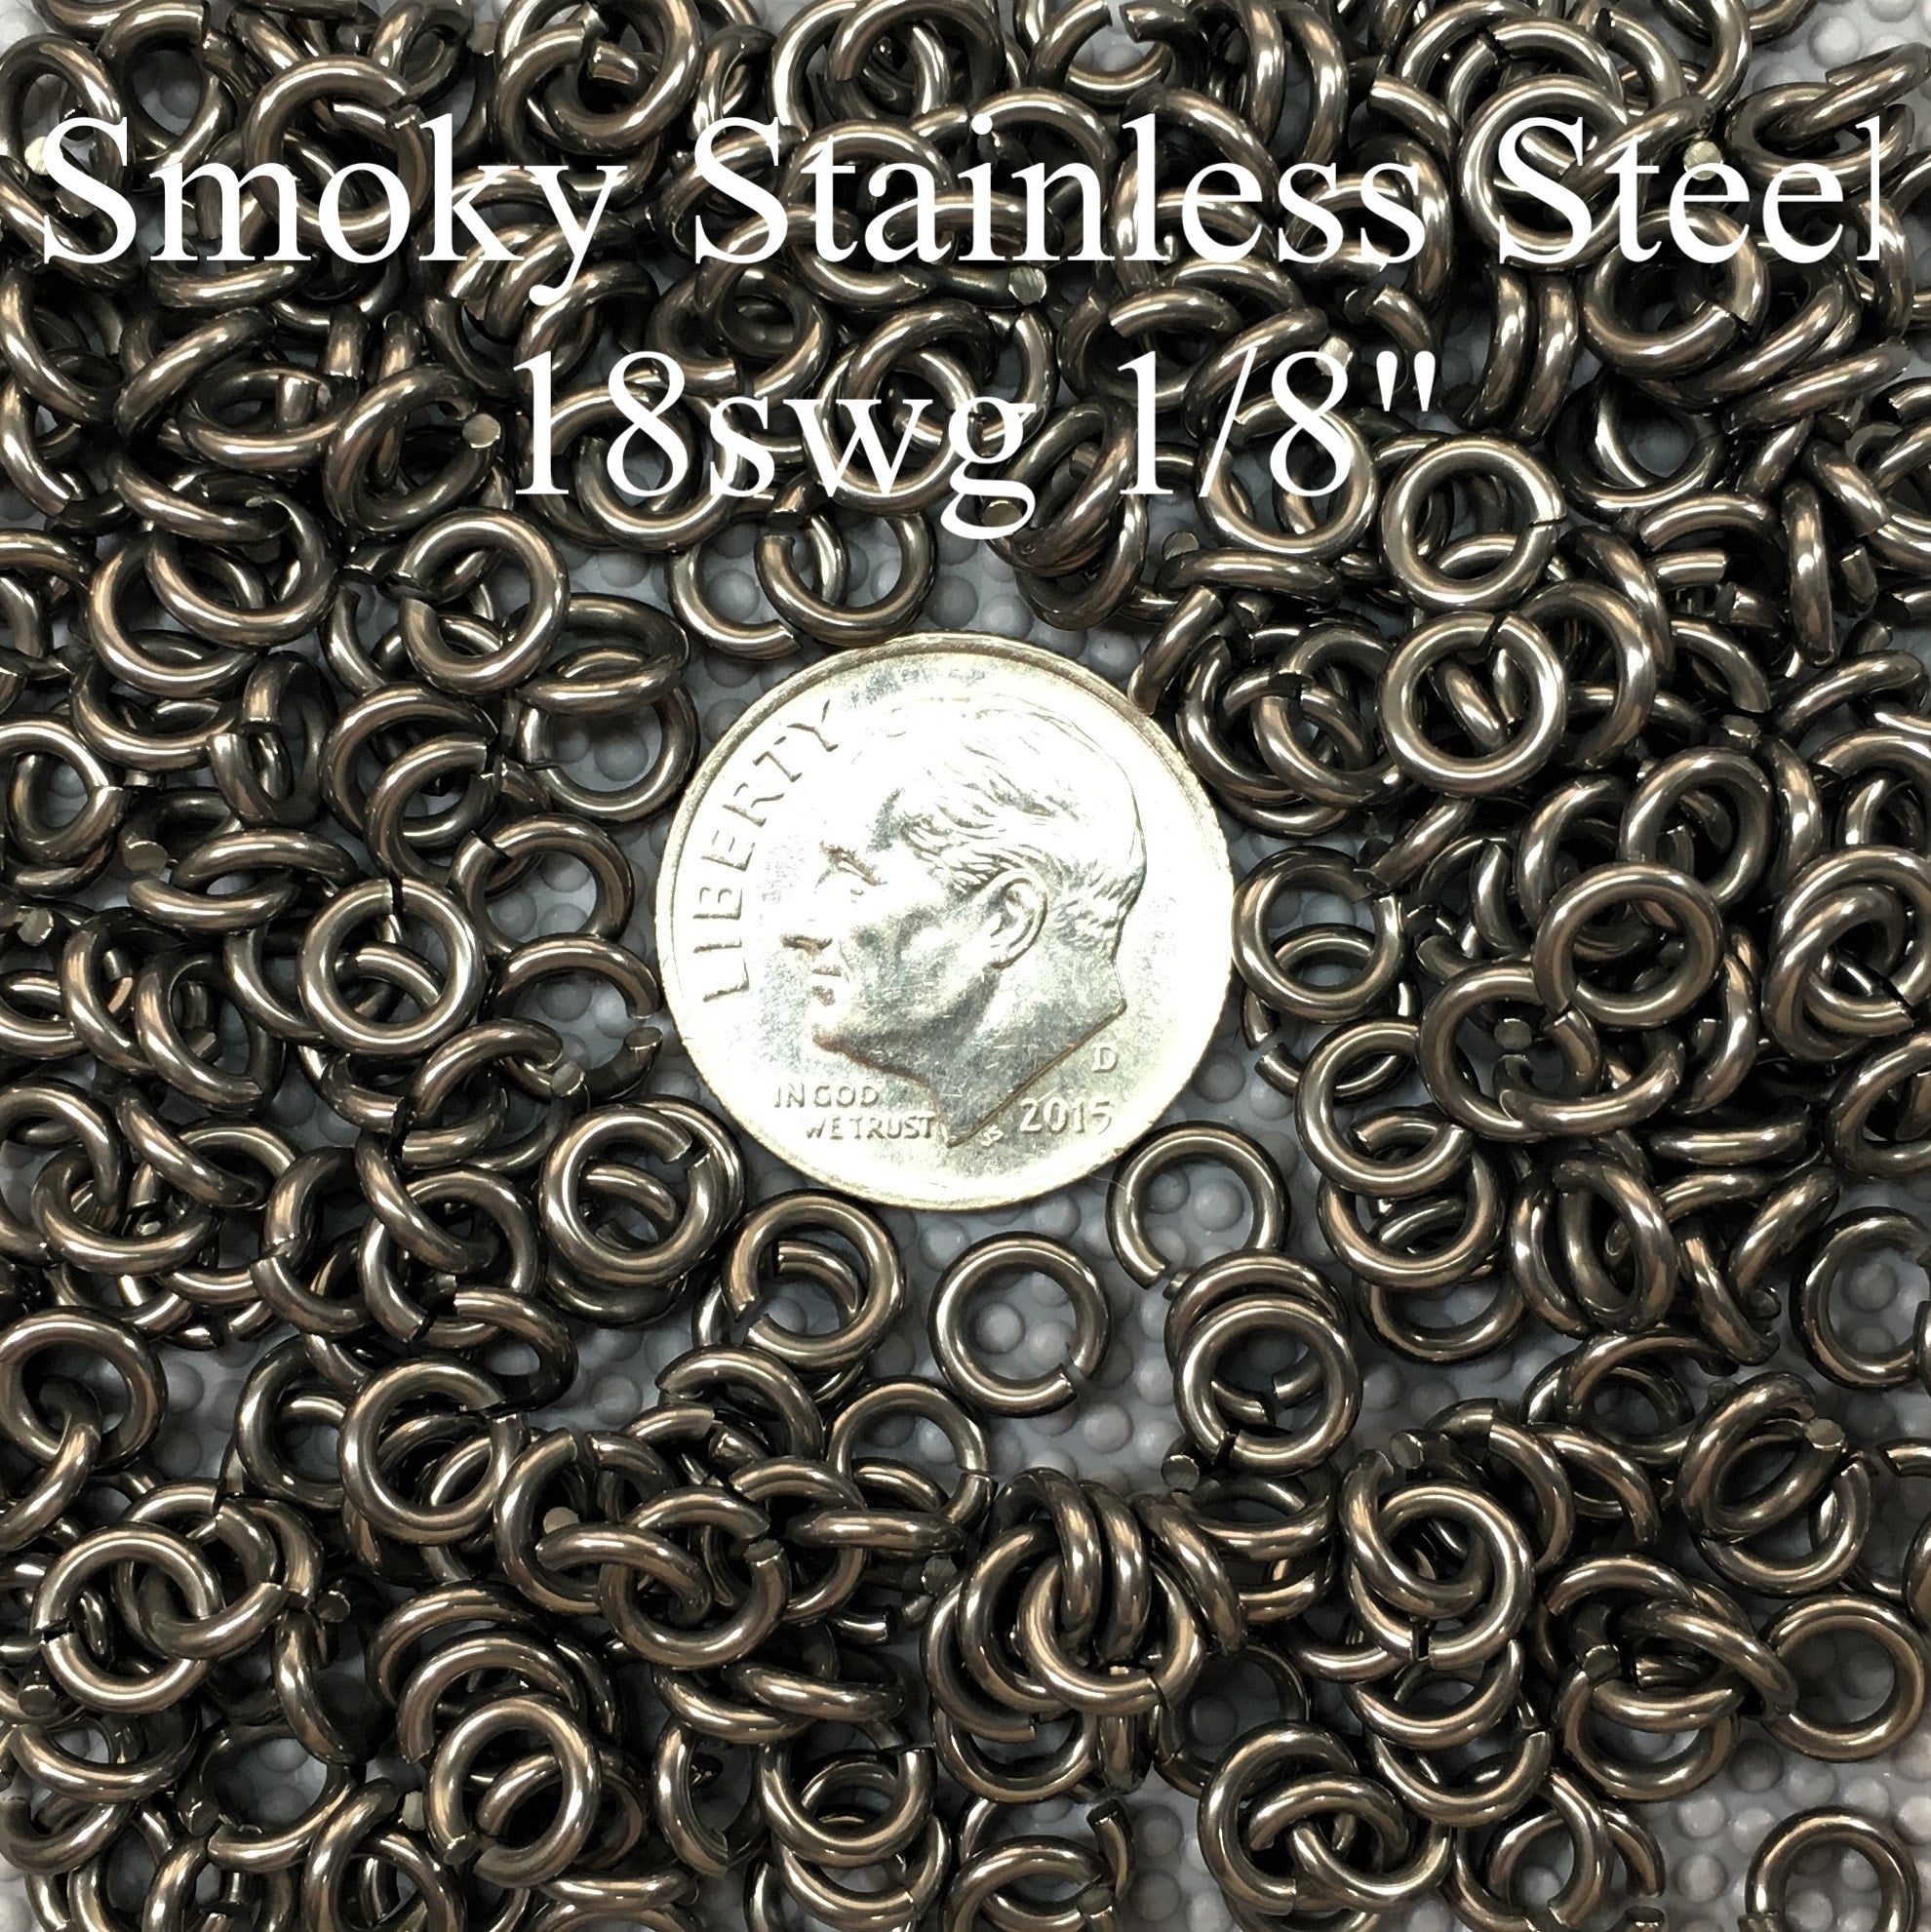 18swg 1/8 2.8AR Smoky Steel - Stainless Steel w/ Smoky Dark Finish